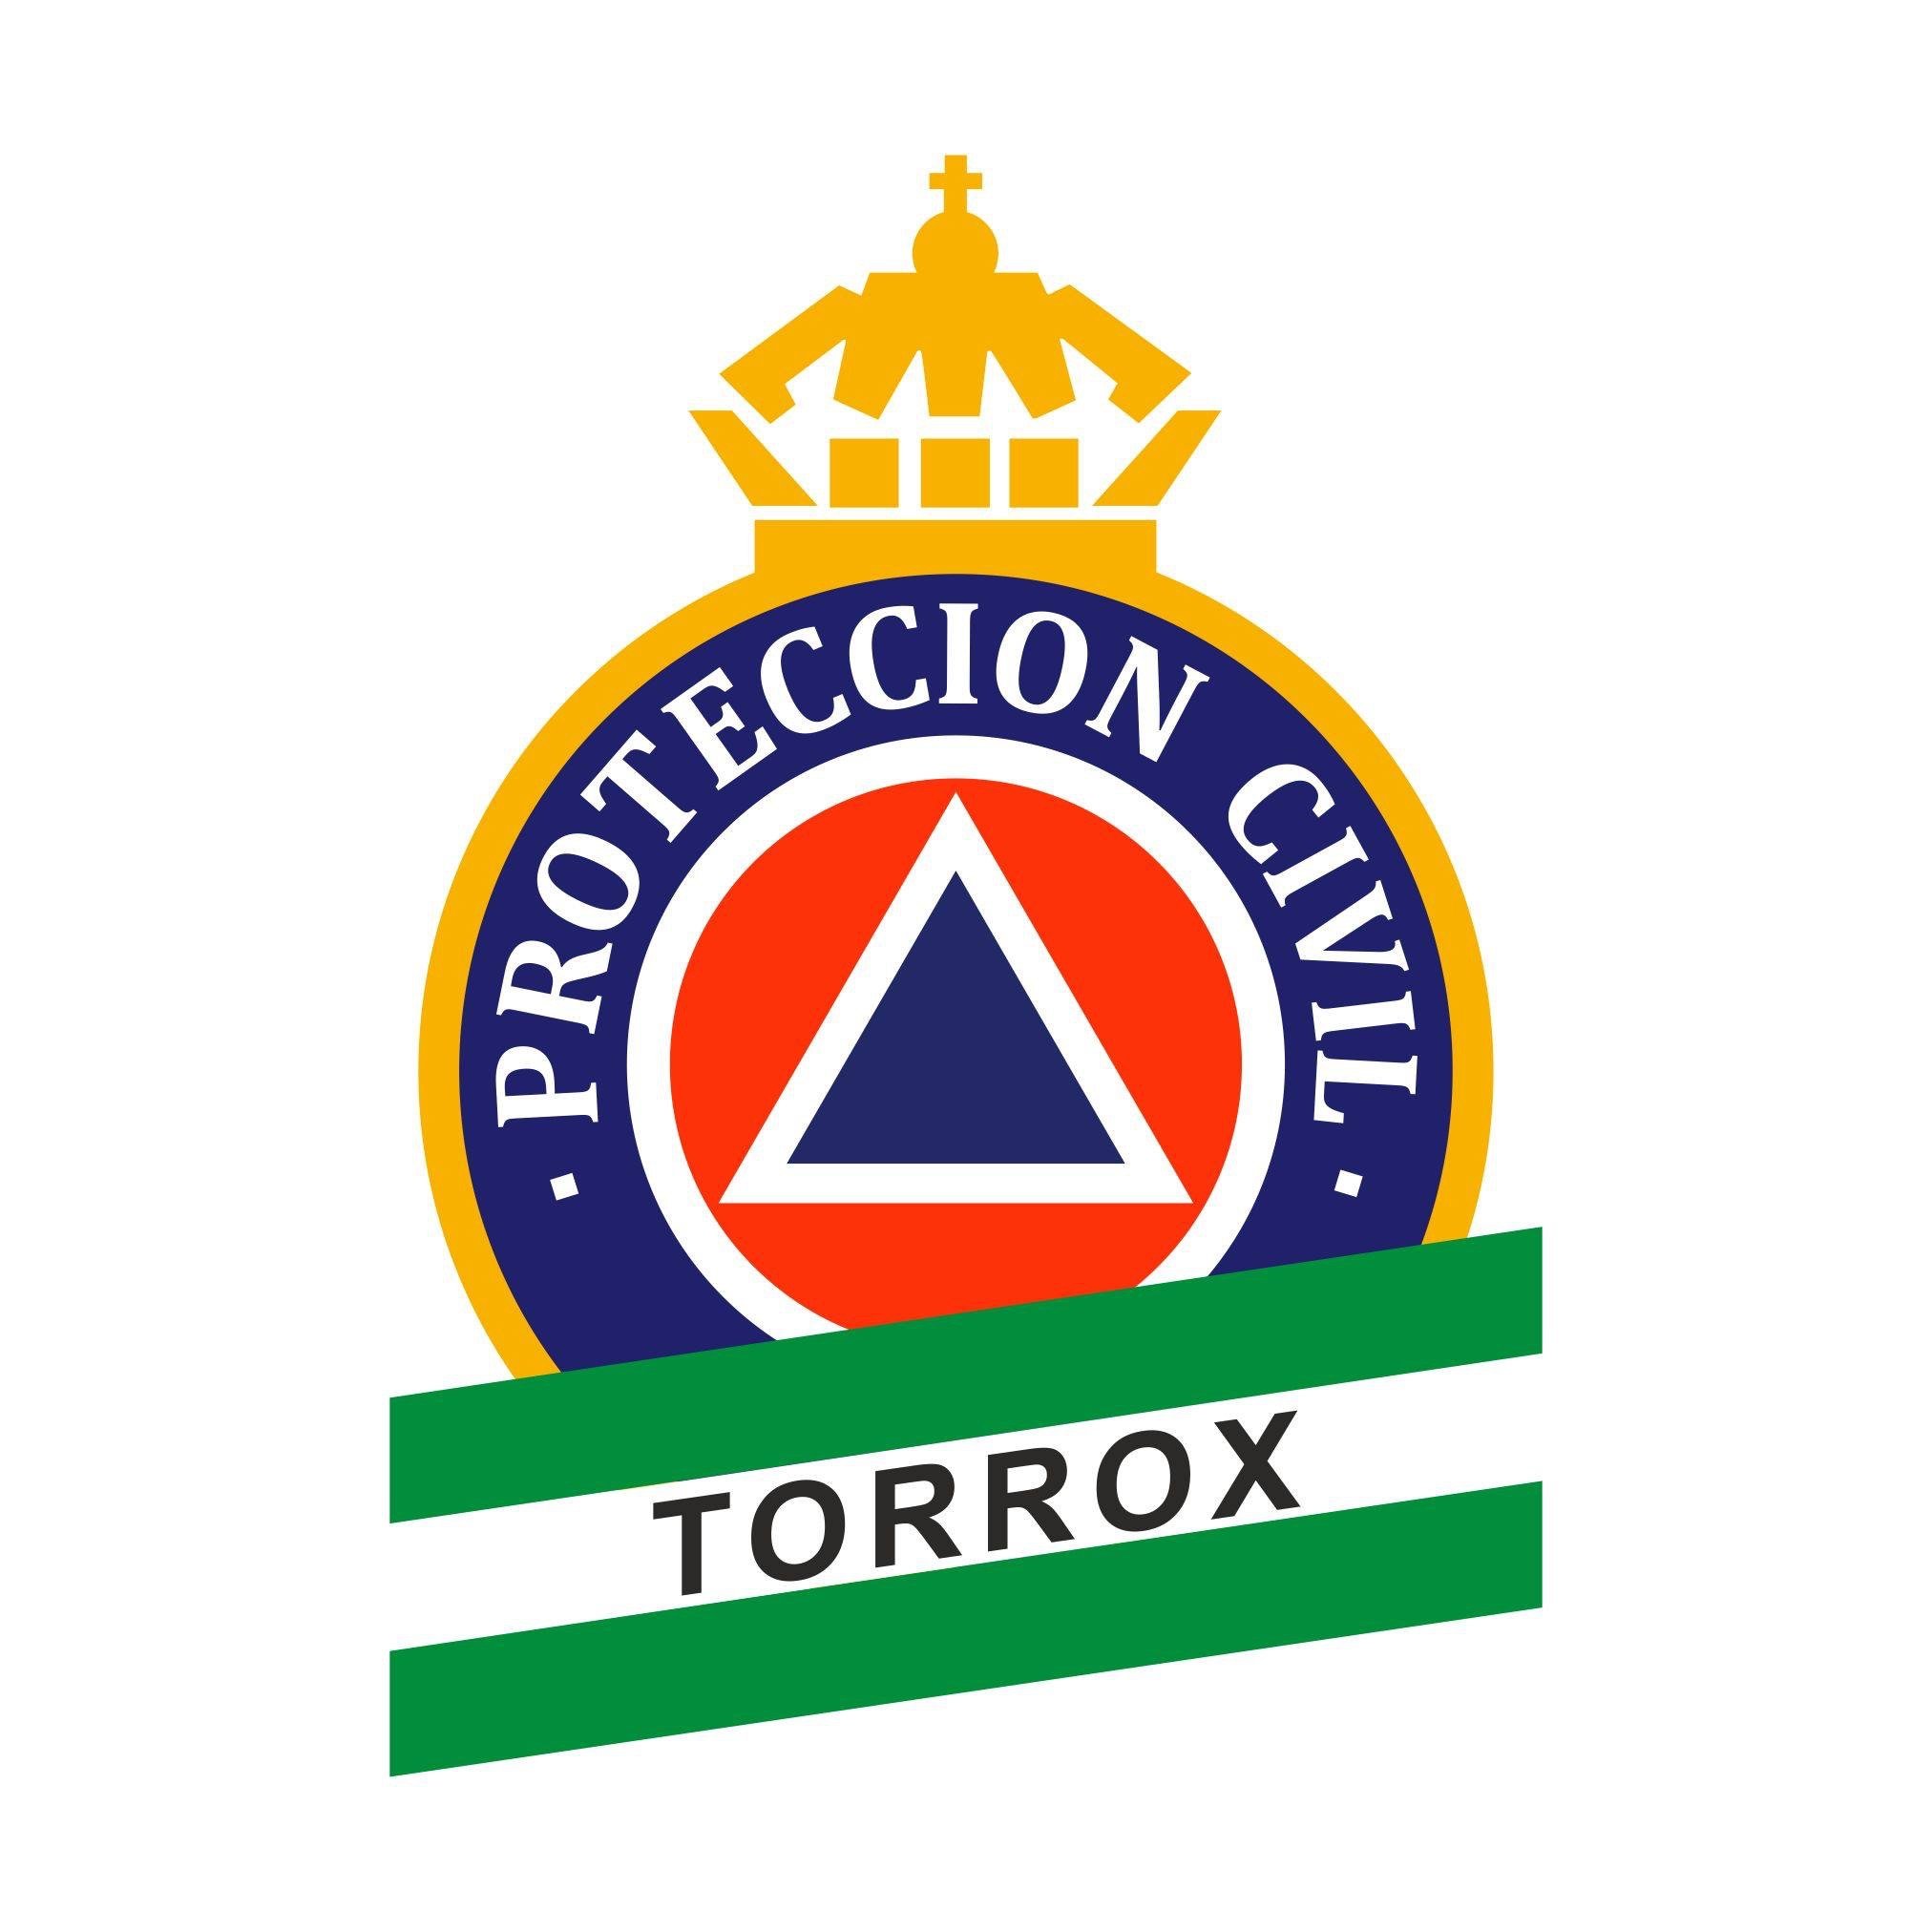 Perfil oficial de la Agrupación de Protección Civil de Torrox.
A través de ella informaremos a la población de las posibles incidencias o alertas de interés.